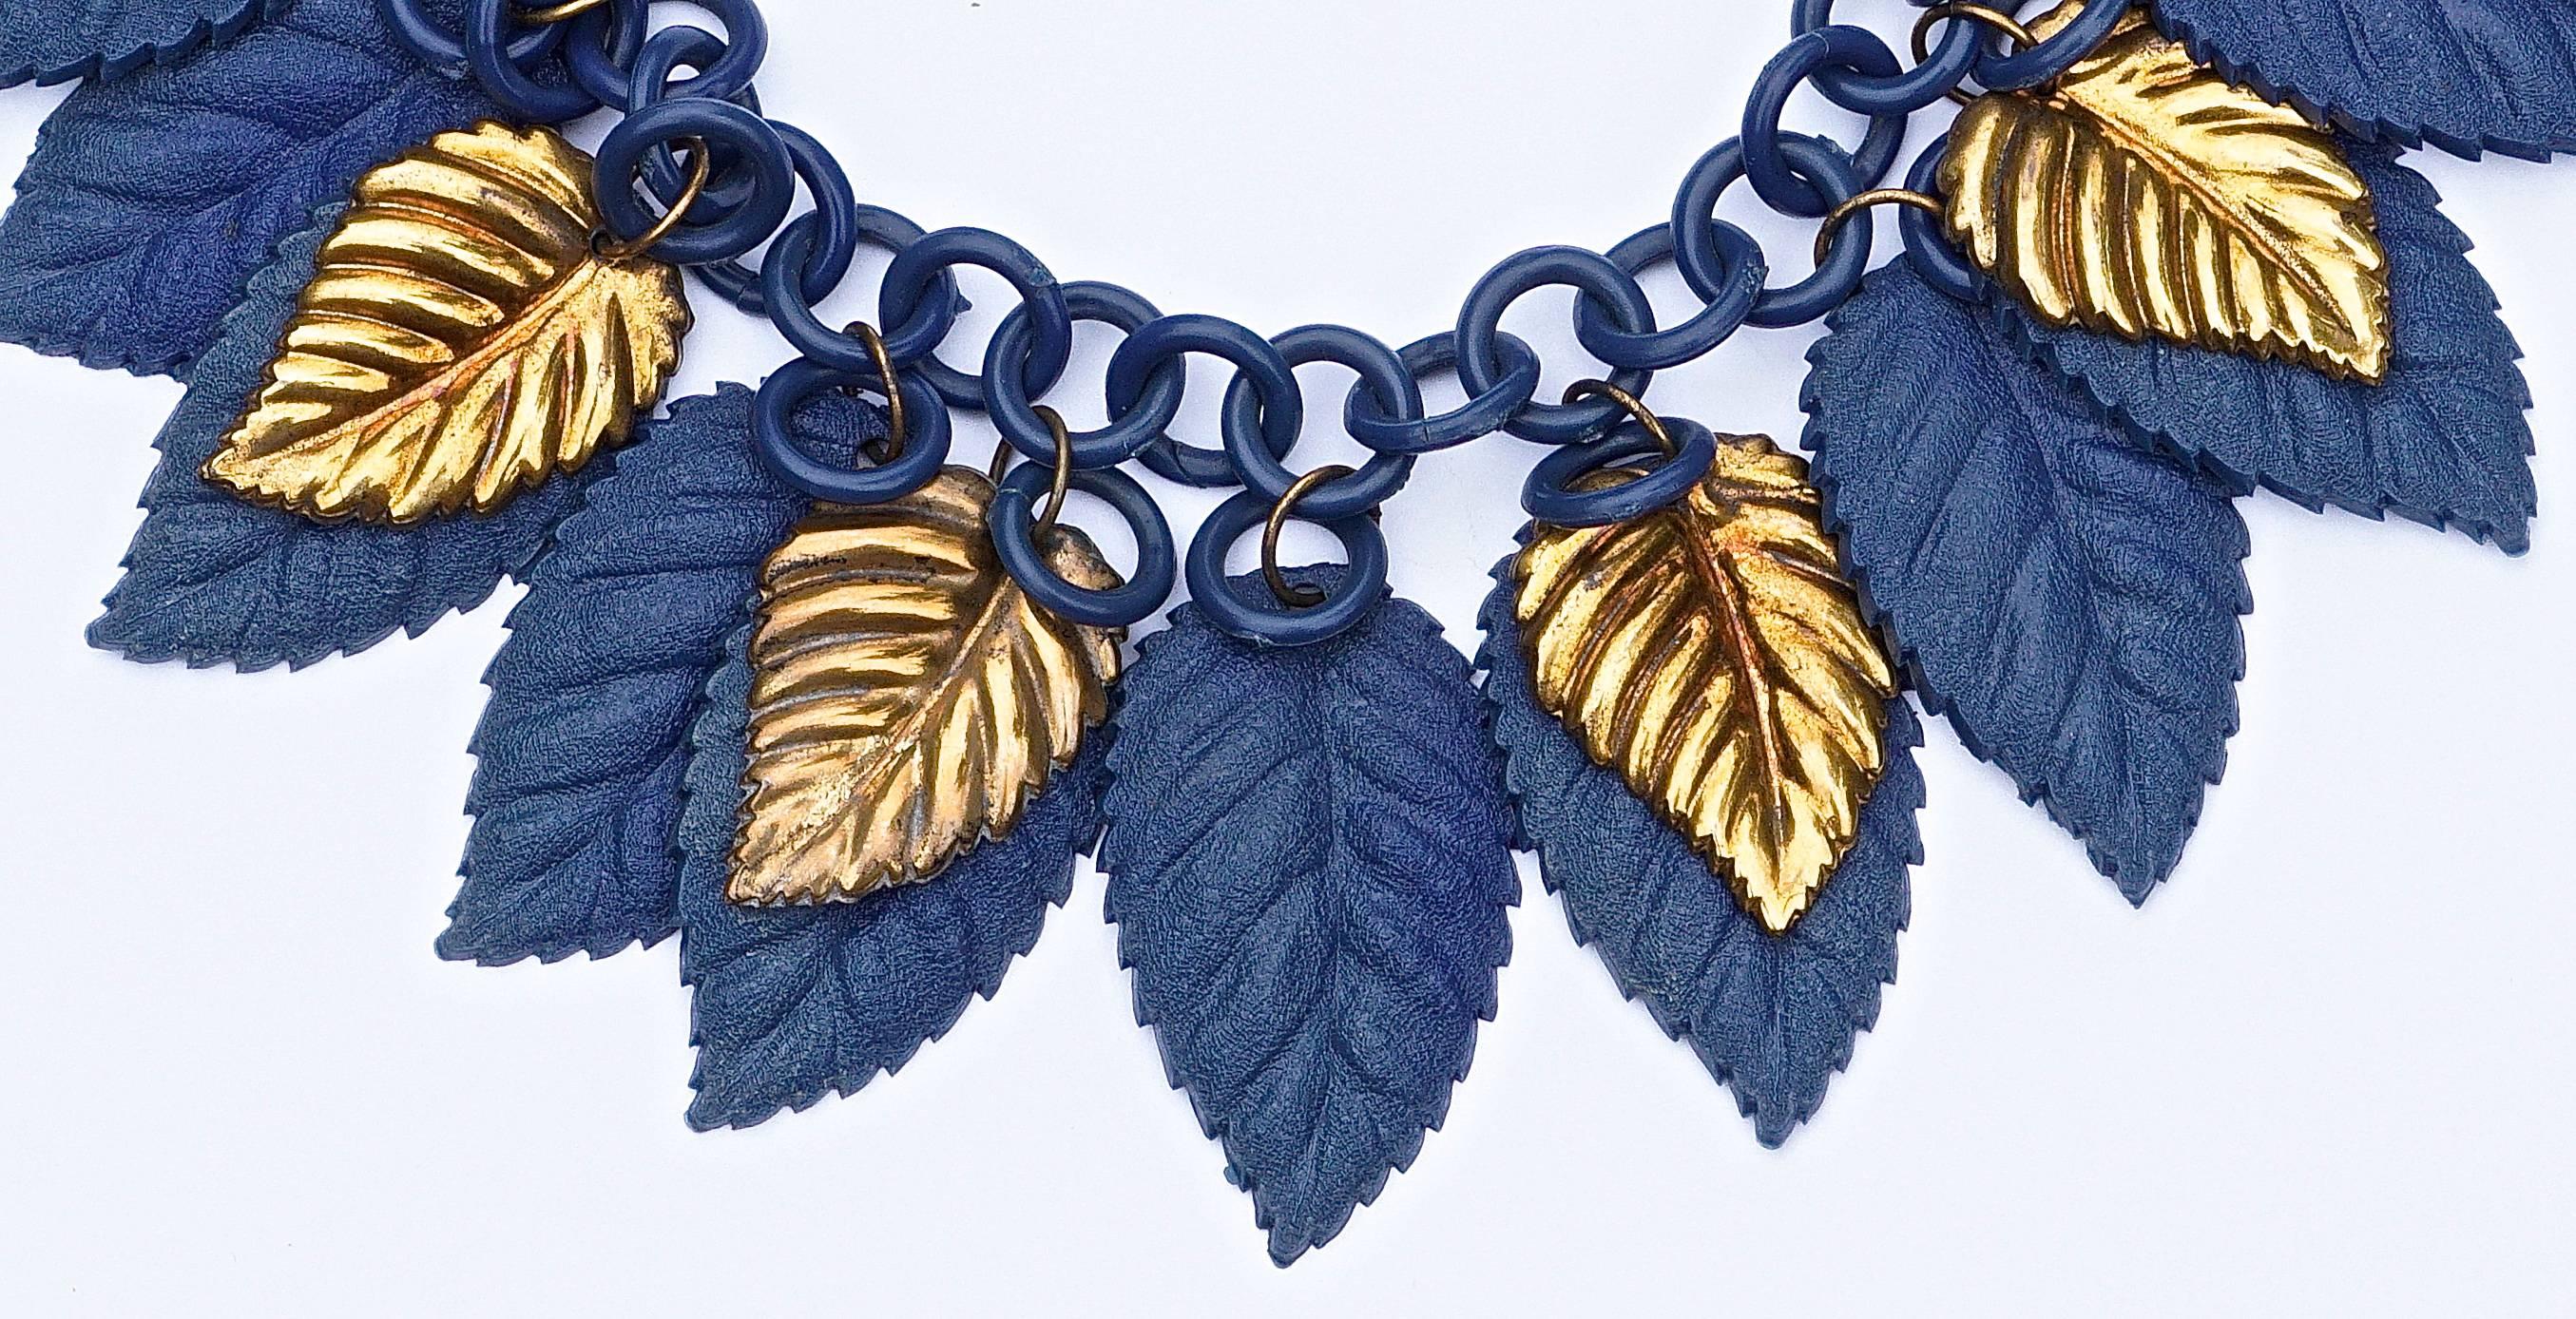 celluloid-Halskette aus den 1930er Jahren, mit dunkelblauen Kunststoff- und goldenen Metallblättern, die von der Gliederkette herabhängen.
Länge 40,5 cm, 15,94 Zoll. Die stilvollen Blätter messen eine Länge von 4,1 cm (1,6 Zoll) und 2,5 cm (0,98